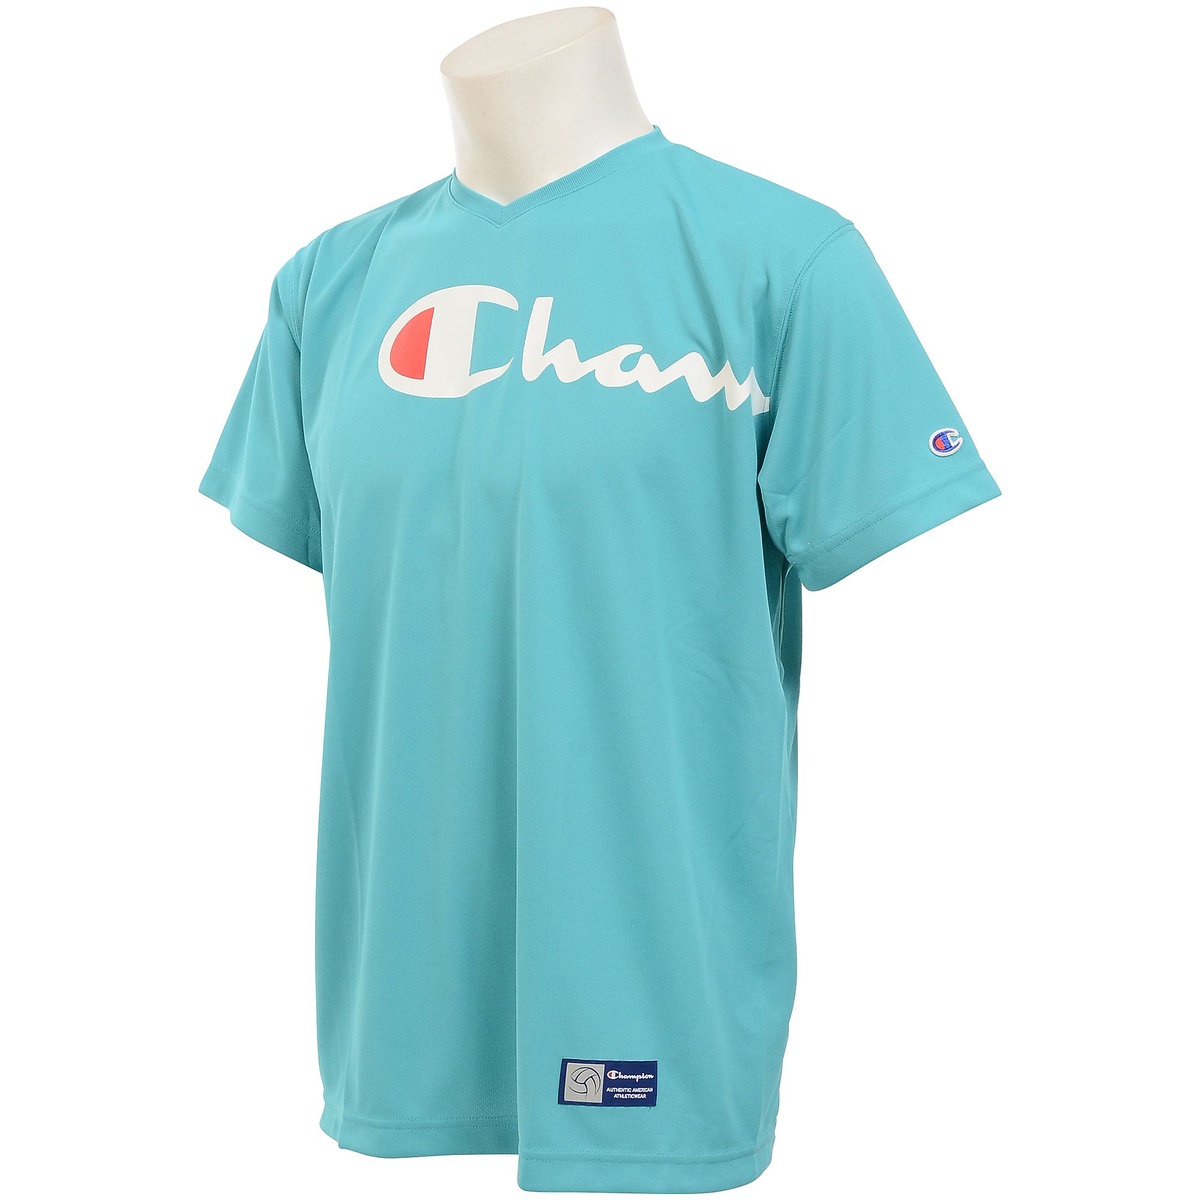 チャンピオン 在庫一掃 バレーボール 半袖Tシャツ １着でも送料無料 PRACTICE T-SHIRT Champion アクアブルー 325 メンズ C3-UV304